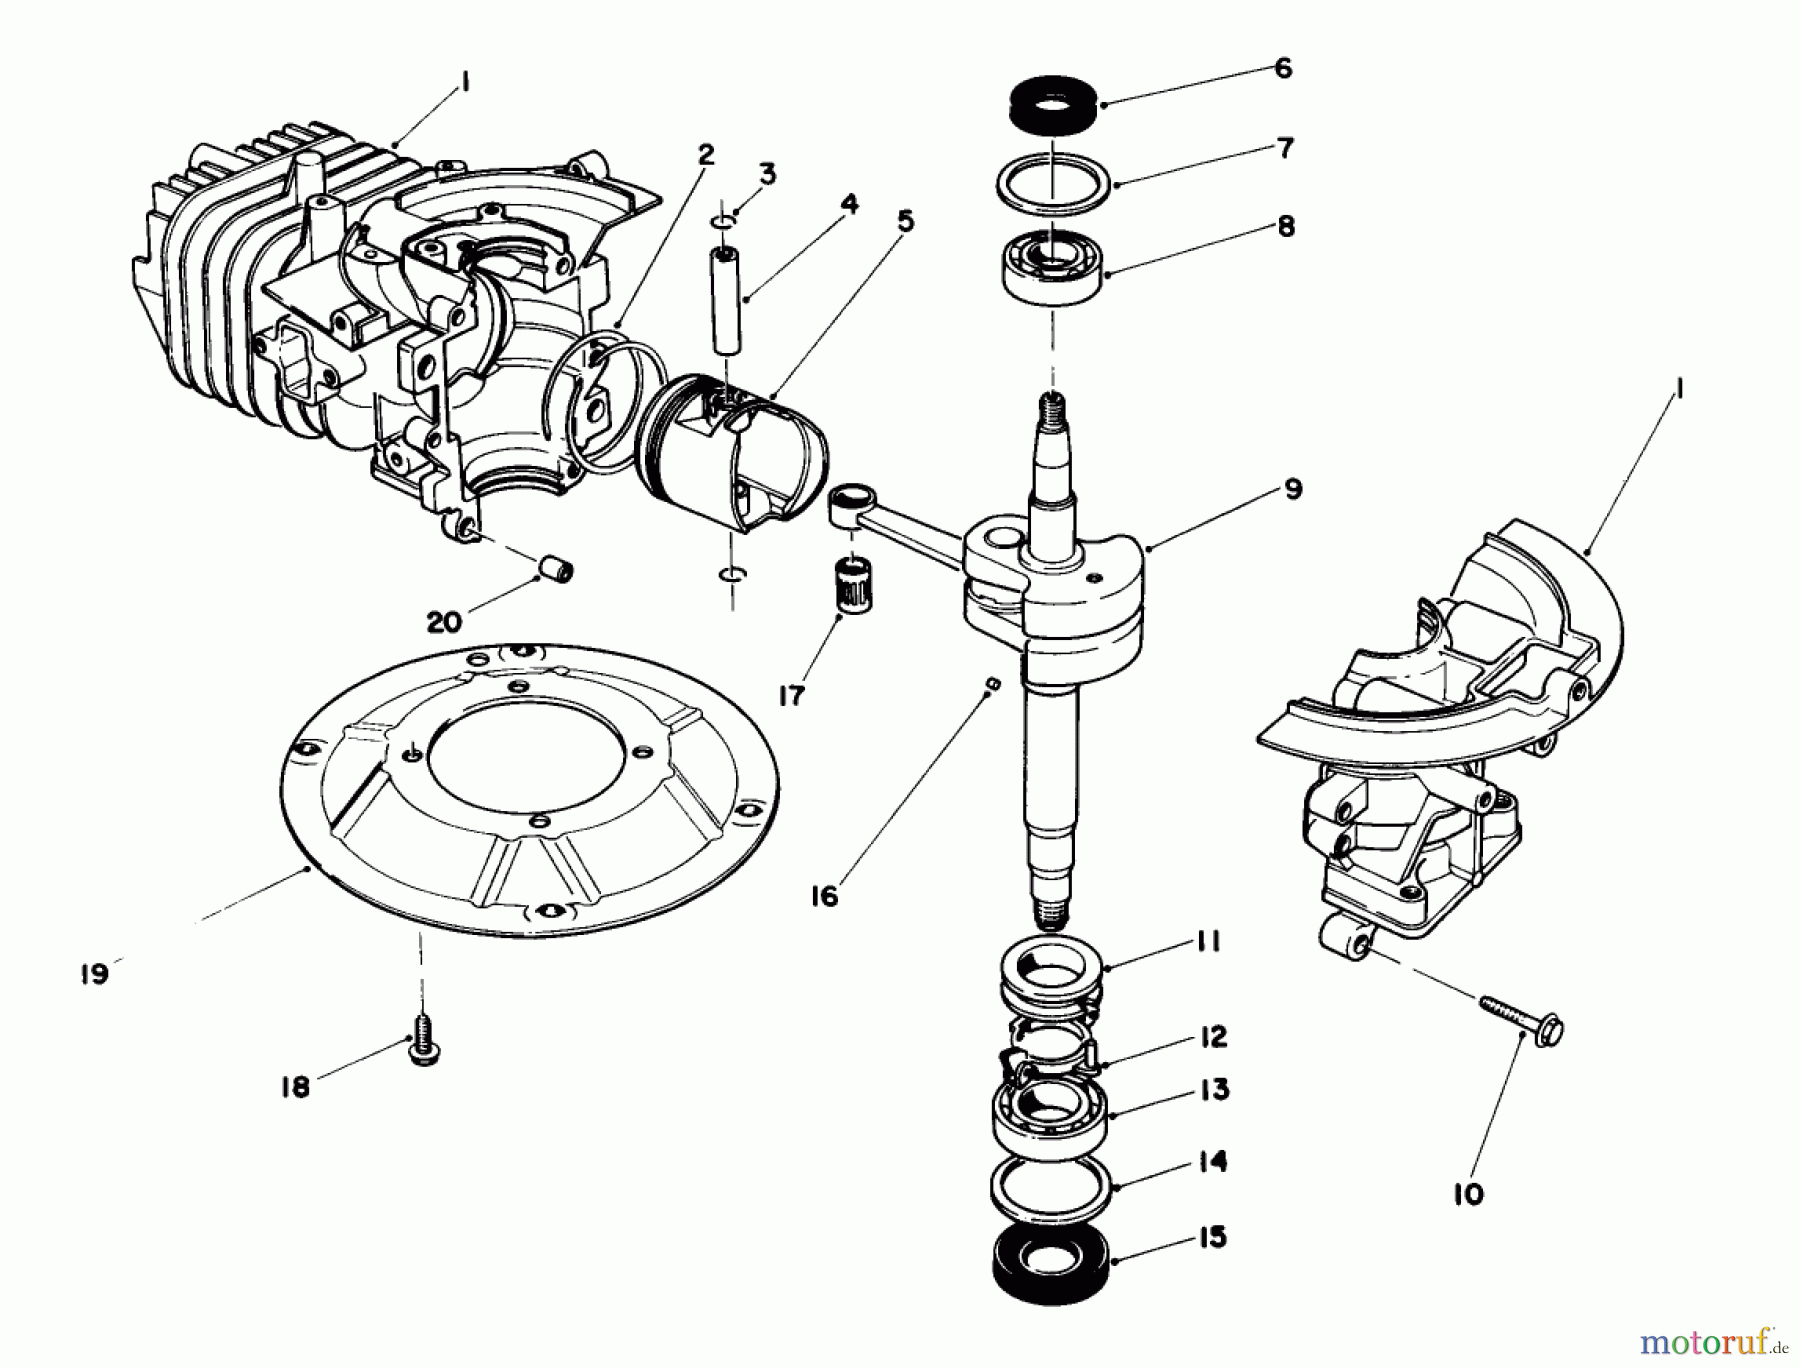  Toro Neu Mowers, Walk-Behind Seite 1 20684 - Toro Lawnmower, 1988 (8000001-8999999) ENGINE ASSEMBLY (MODEL NO. 47PG6 & 47PH7)